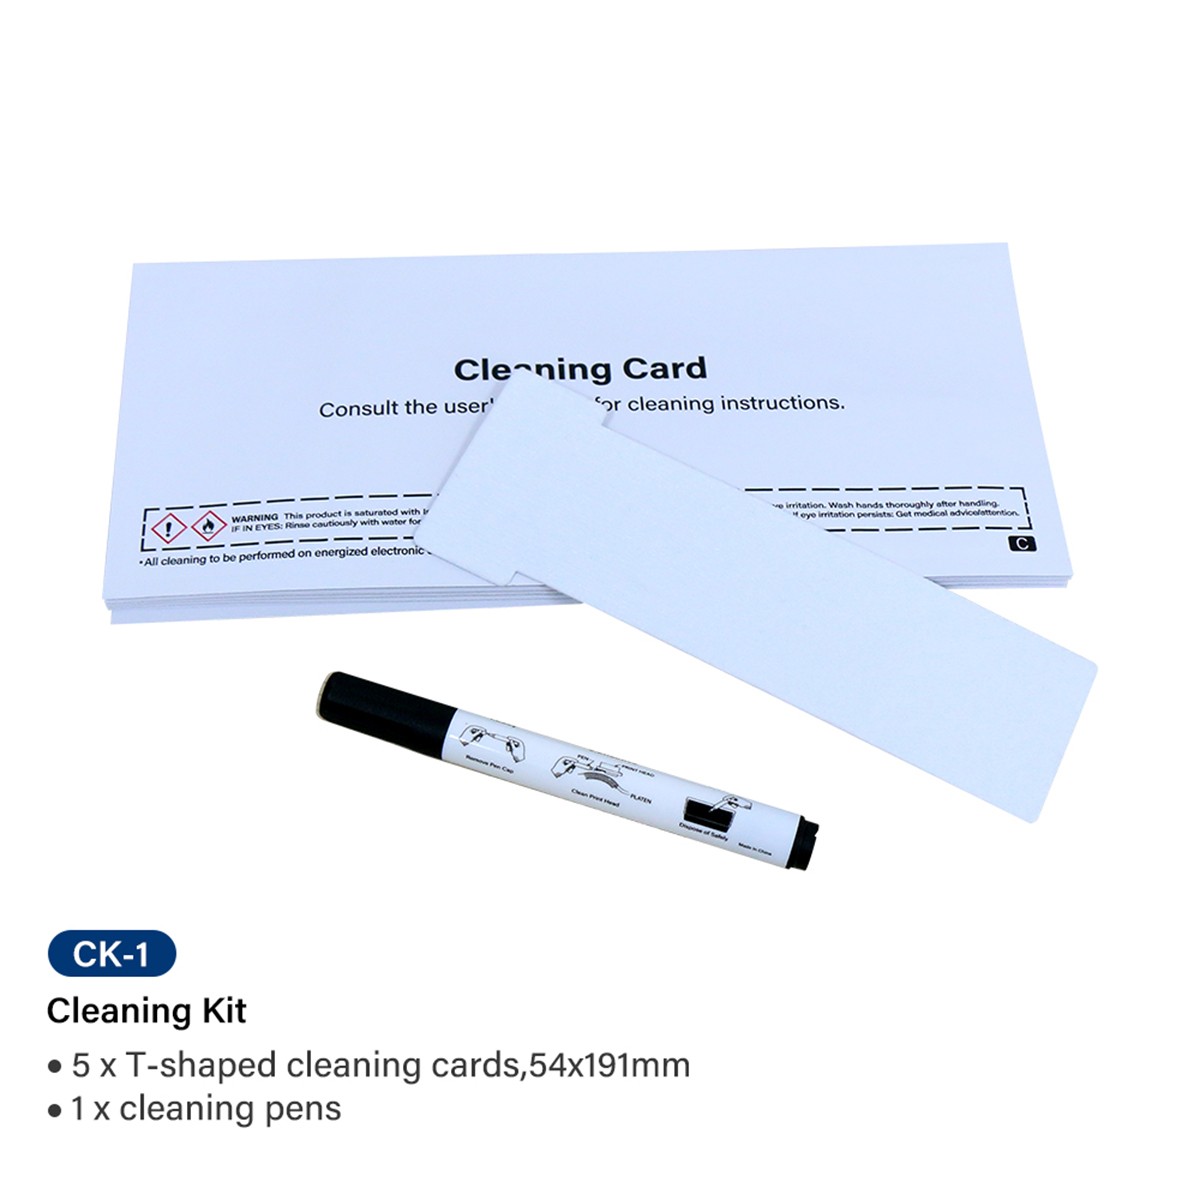 New Magicard CK-1 5 sheet Card printer clean 54x191mm 1clean pen